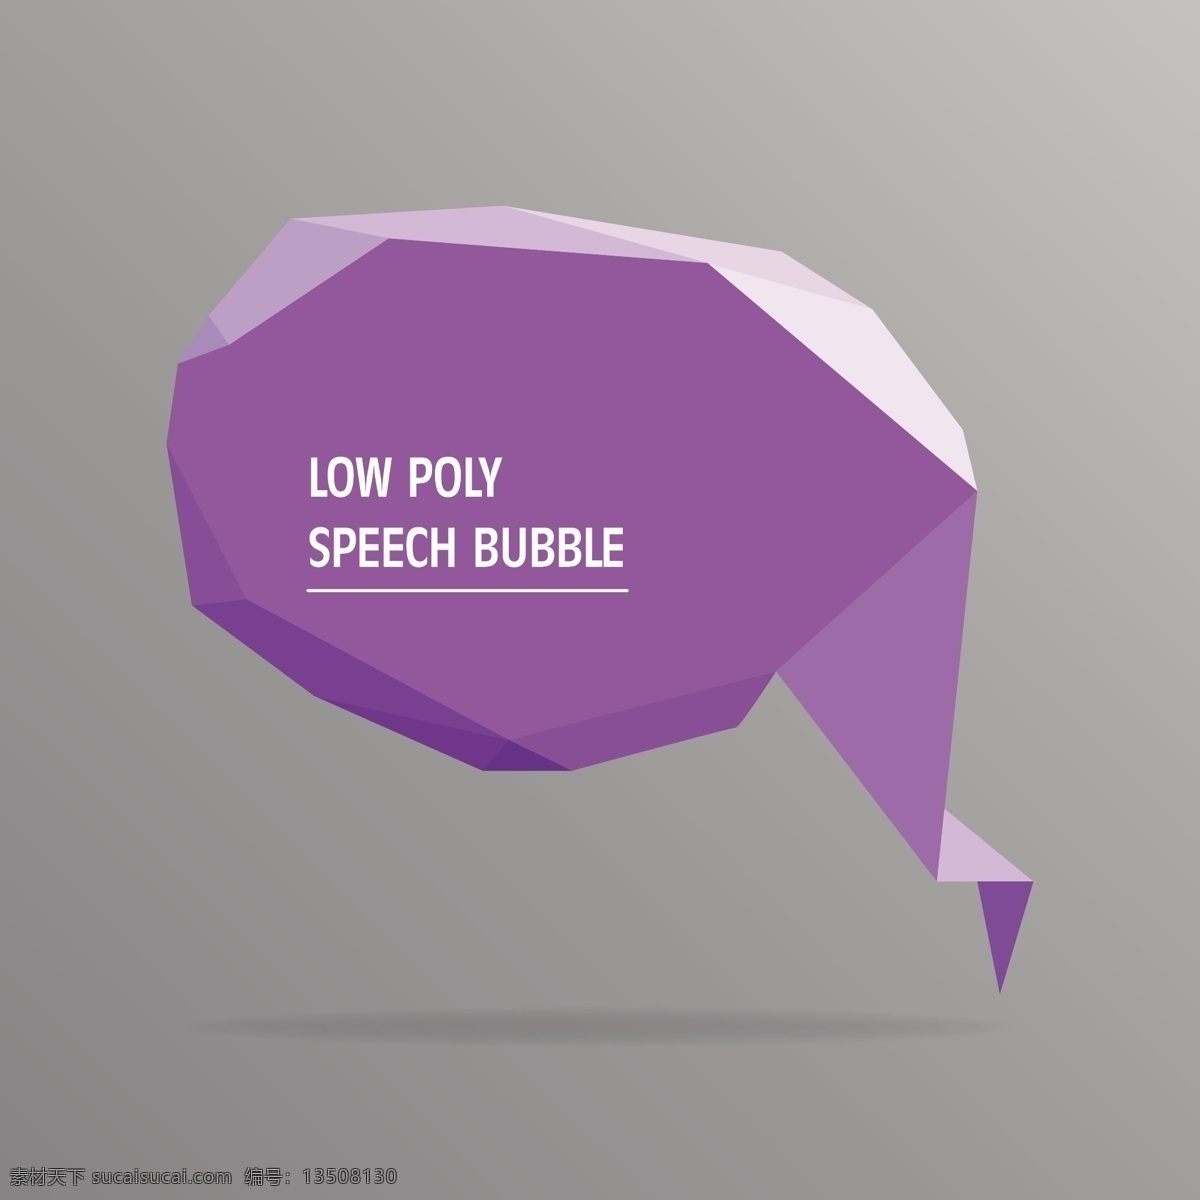 紫色 低 聚 语音 泡沫 抽象 几何 模板 语音气泡 气球 气泡 三维 聊天 信息 多边形 三 聊天气泡 低多边形 语音气球